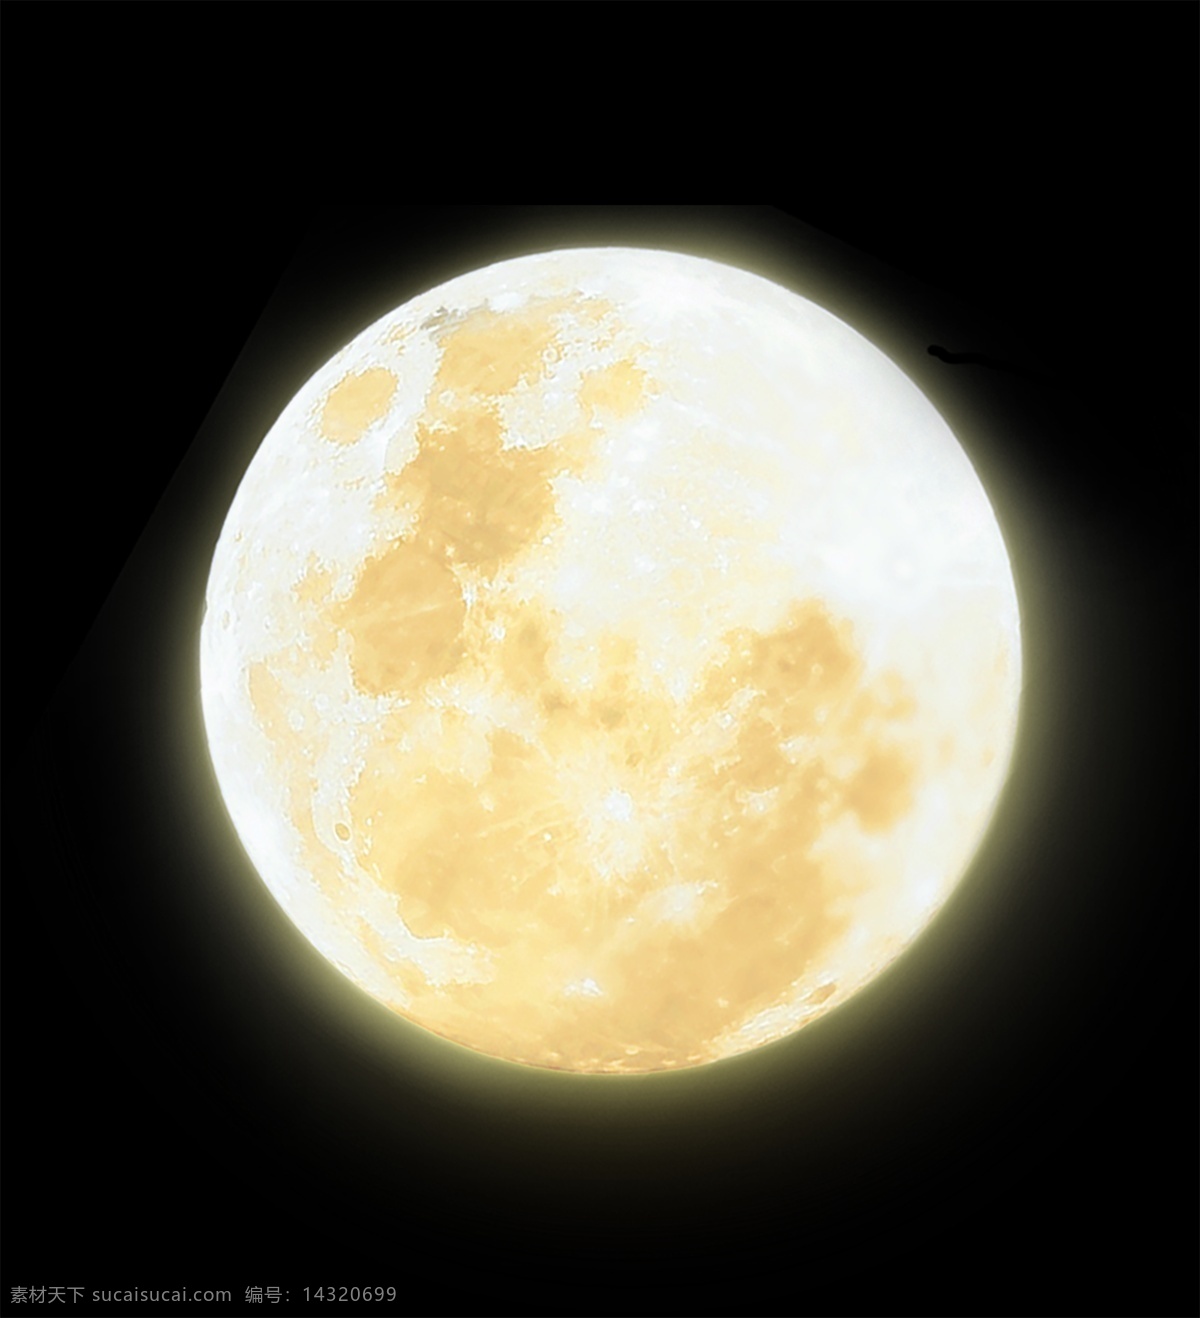 明月 夜明珠 月亮抠图 明珠 玉石 珠宝 月亮 发光的月亮 太阳 星球 发光球体 球丸 碧玉 火球 金星 小素材